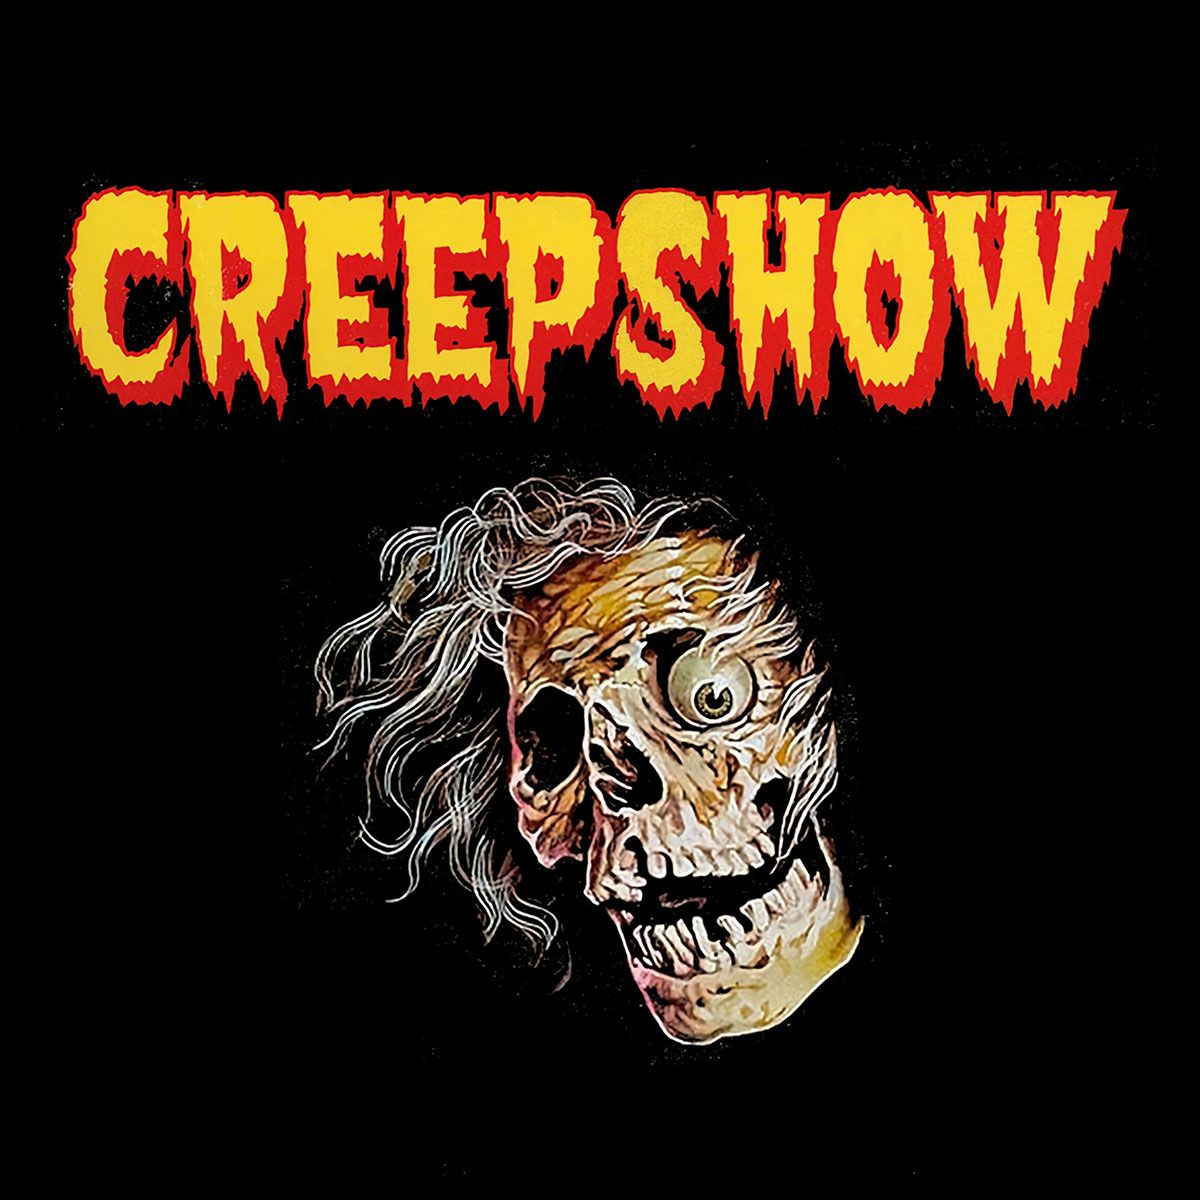 Nome do produto: Creepshow